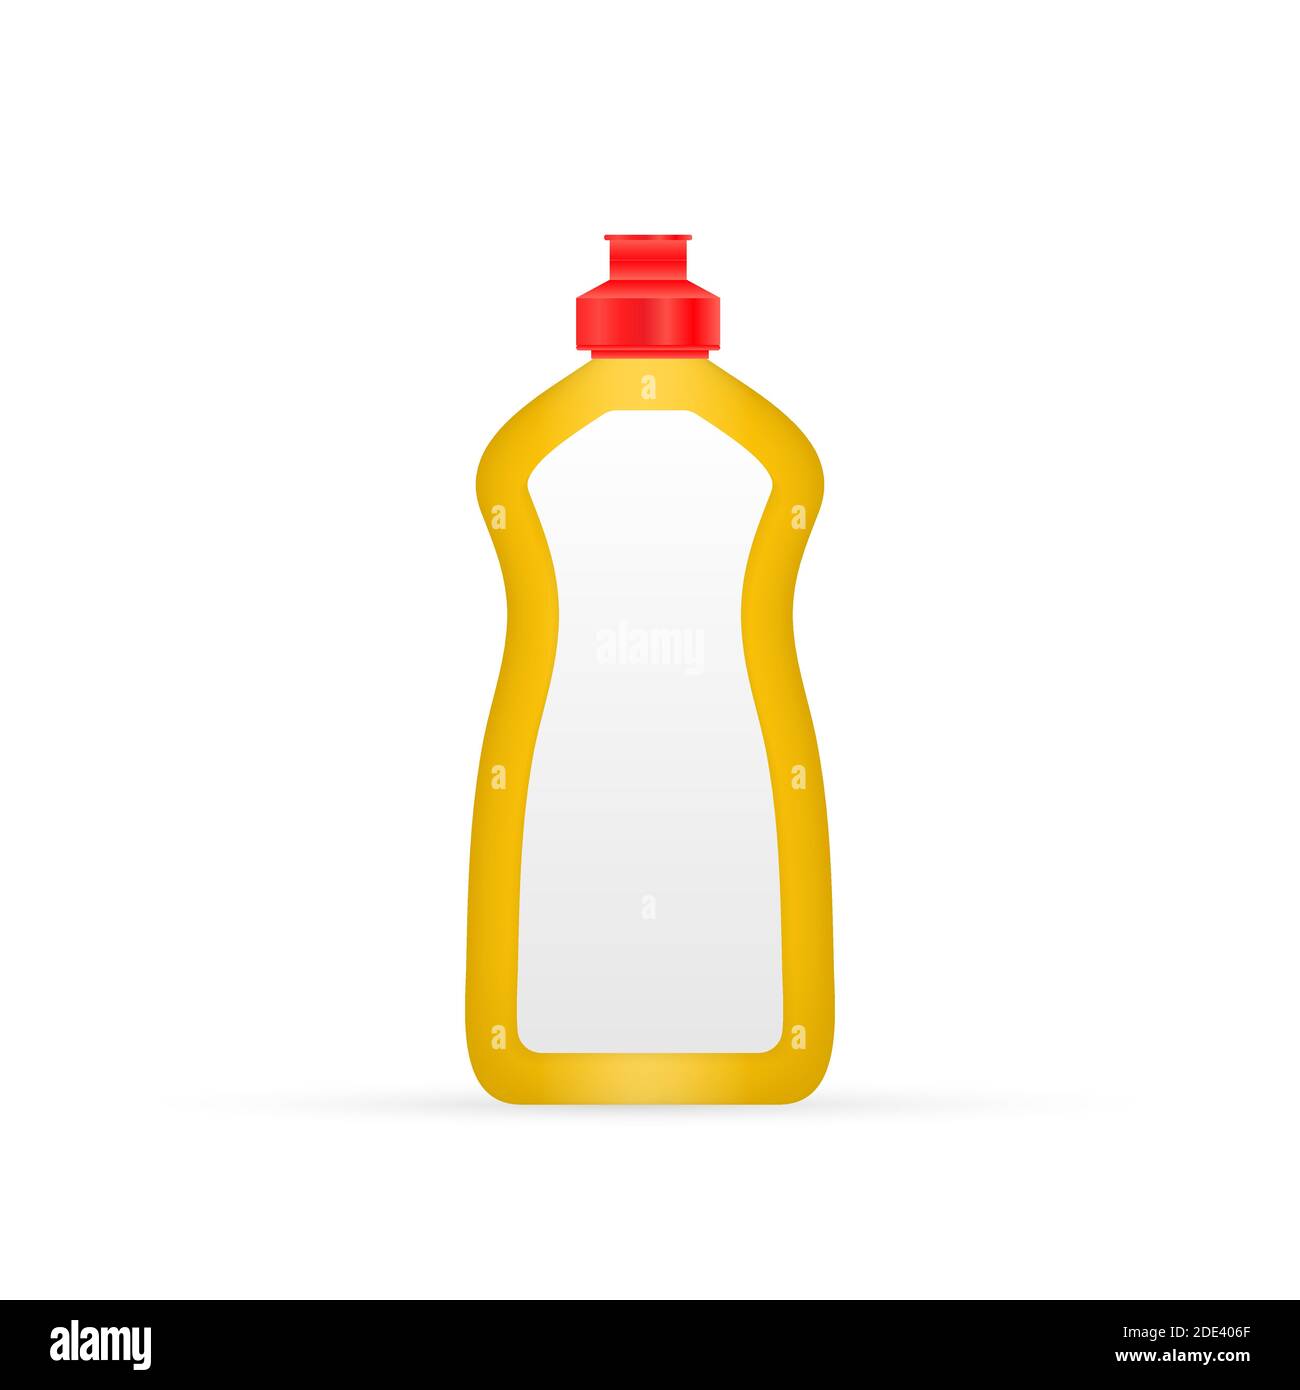 Stracci ritorti per la pulizia di pavimenti e bottiglie di plastica per  prodotti chimici liquidi, gel, detergente su tavolo bianco, fondo giallo  Foto stock - Alamy